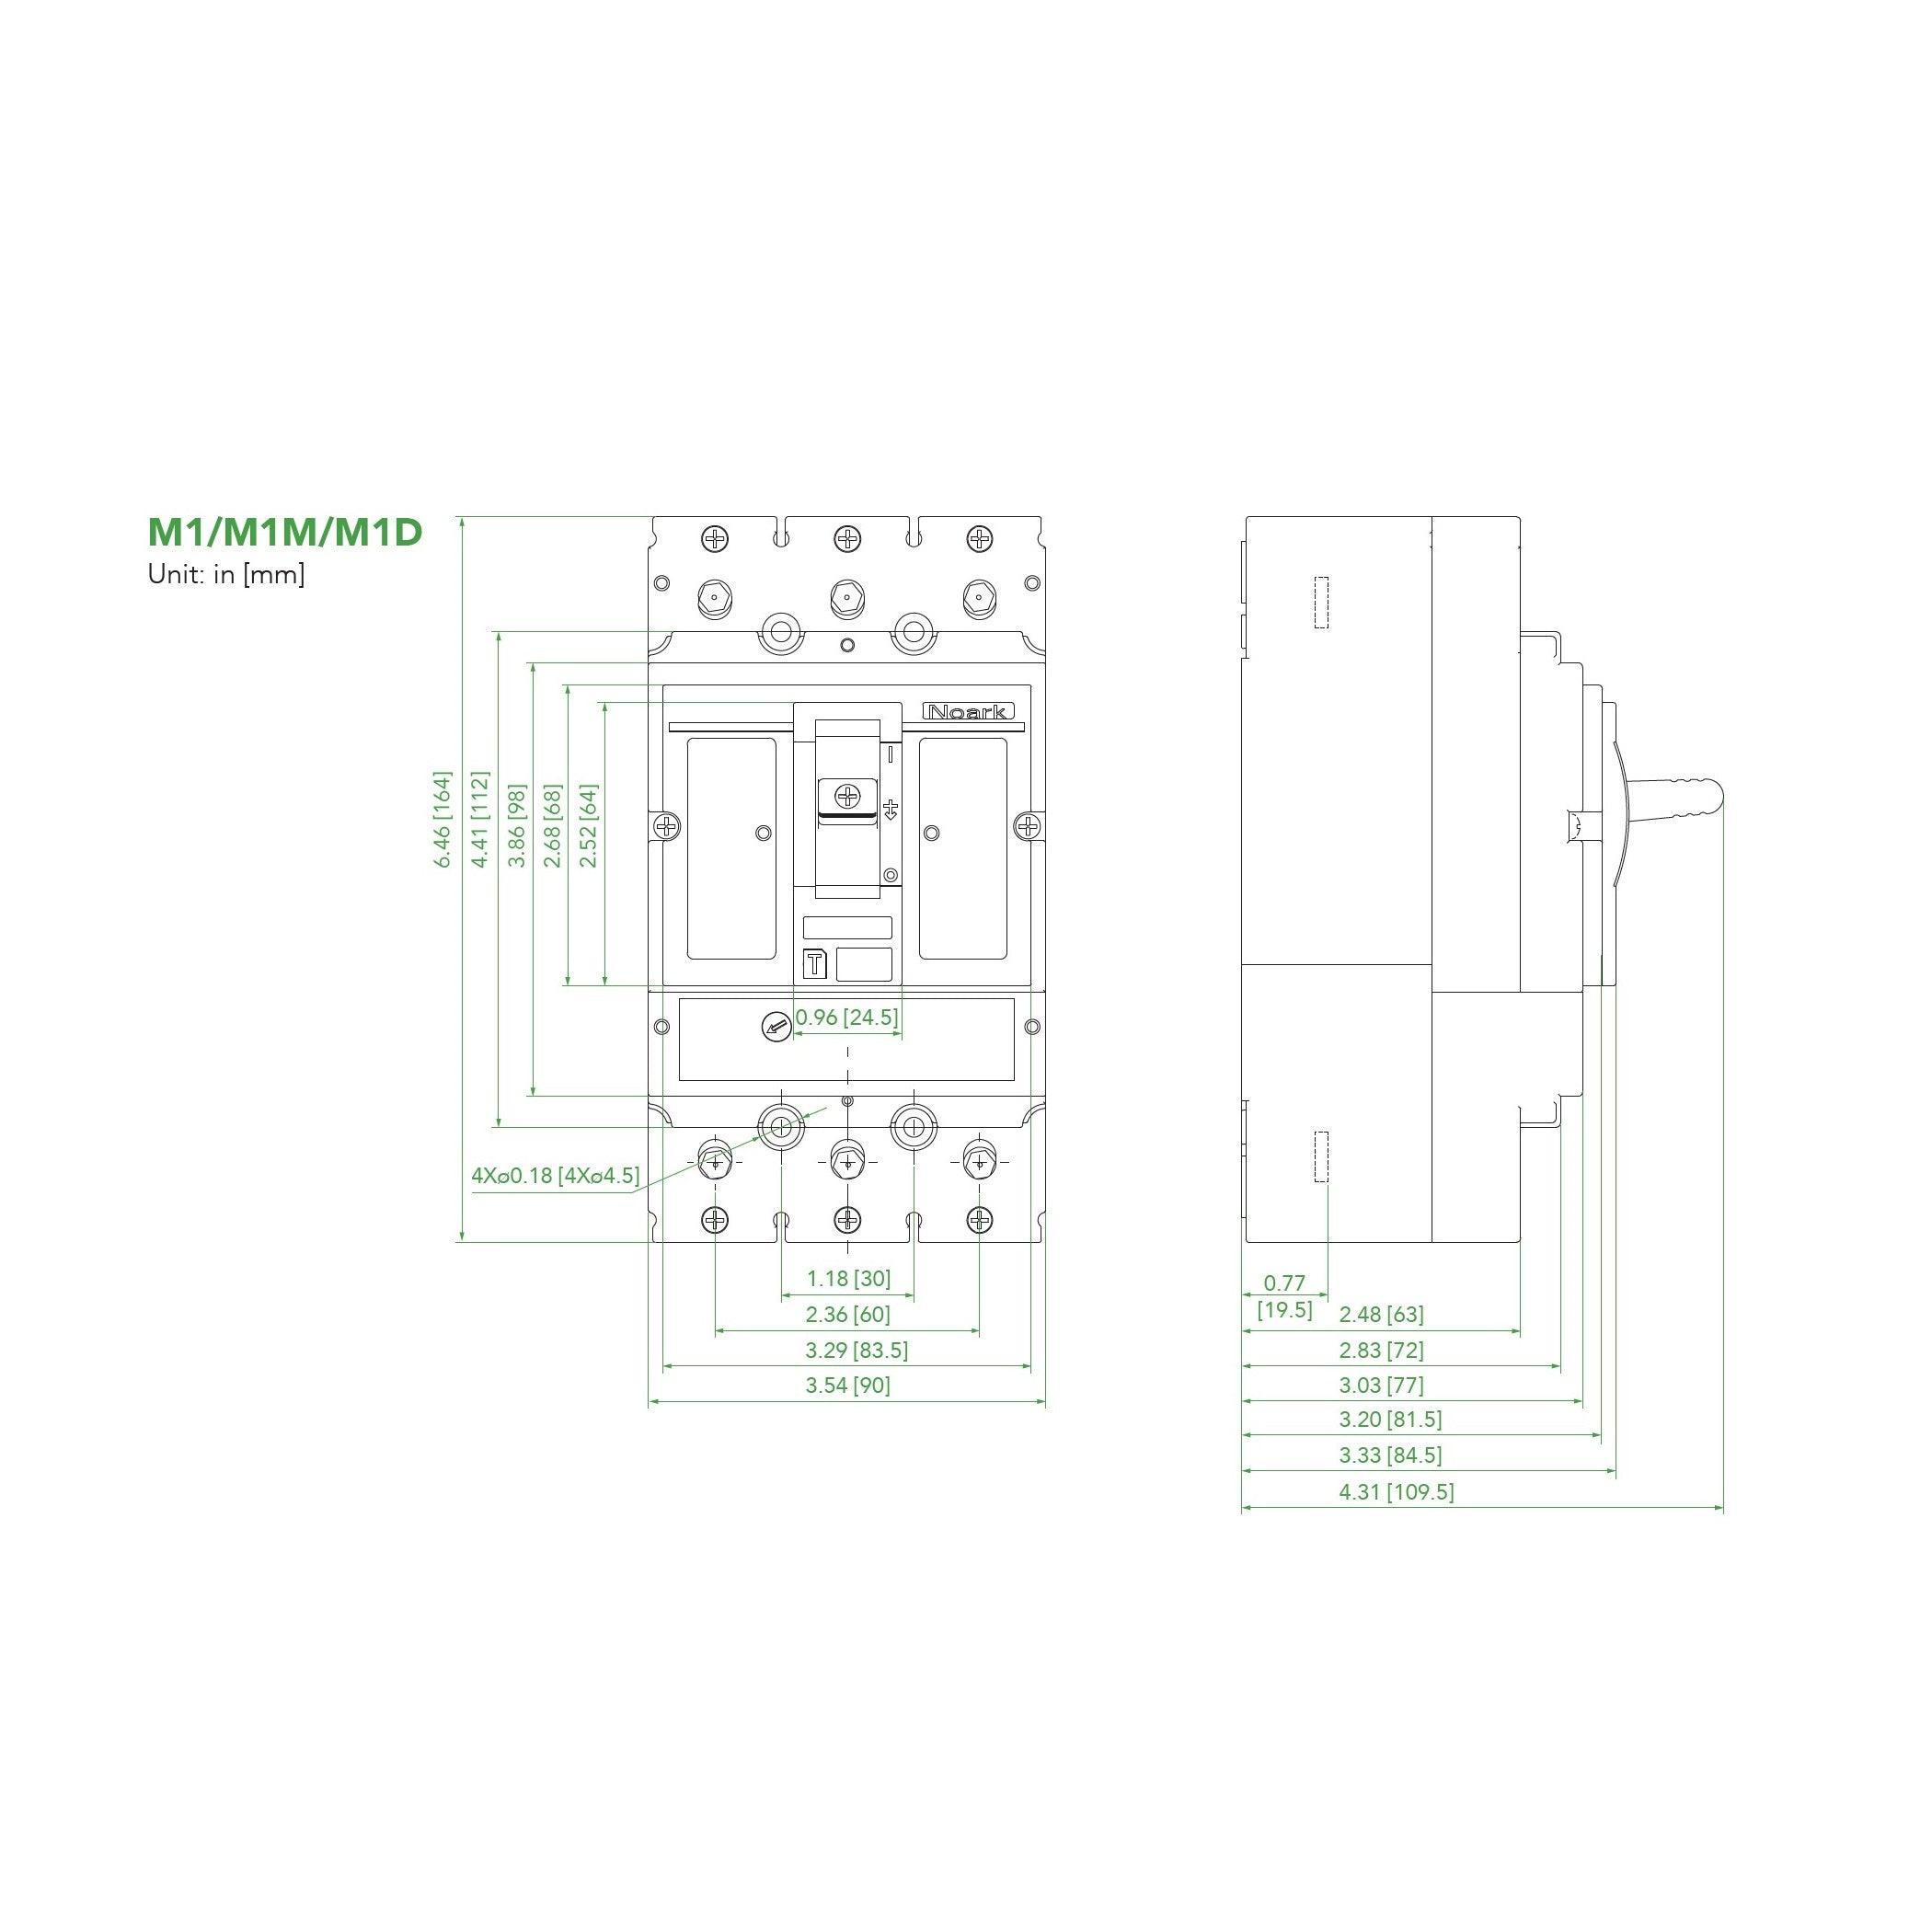 NOARK® Molded Case Circuit Breaker 90A, 3P IC Class H | M1H90T3L - Forces Inc